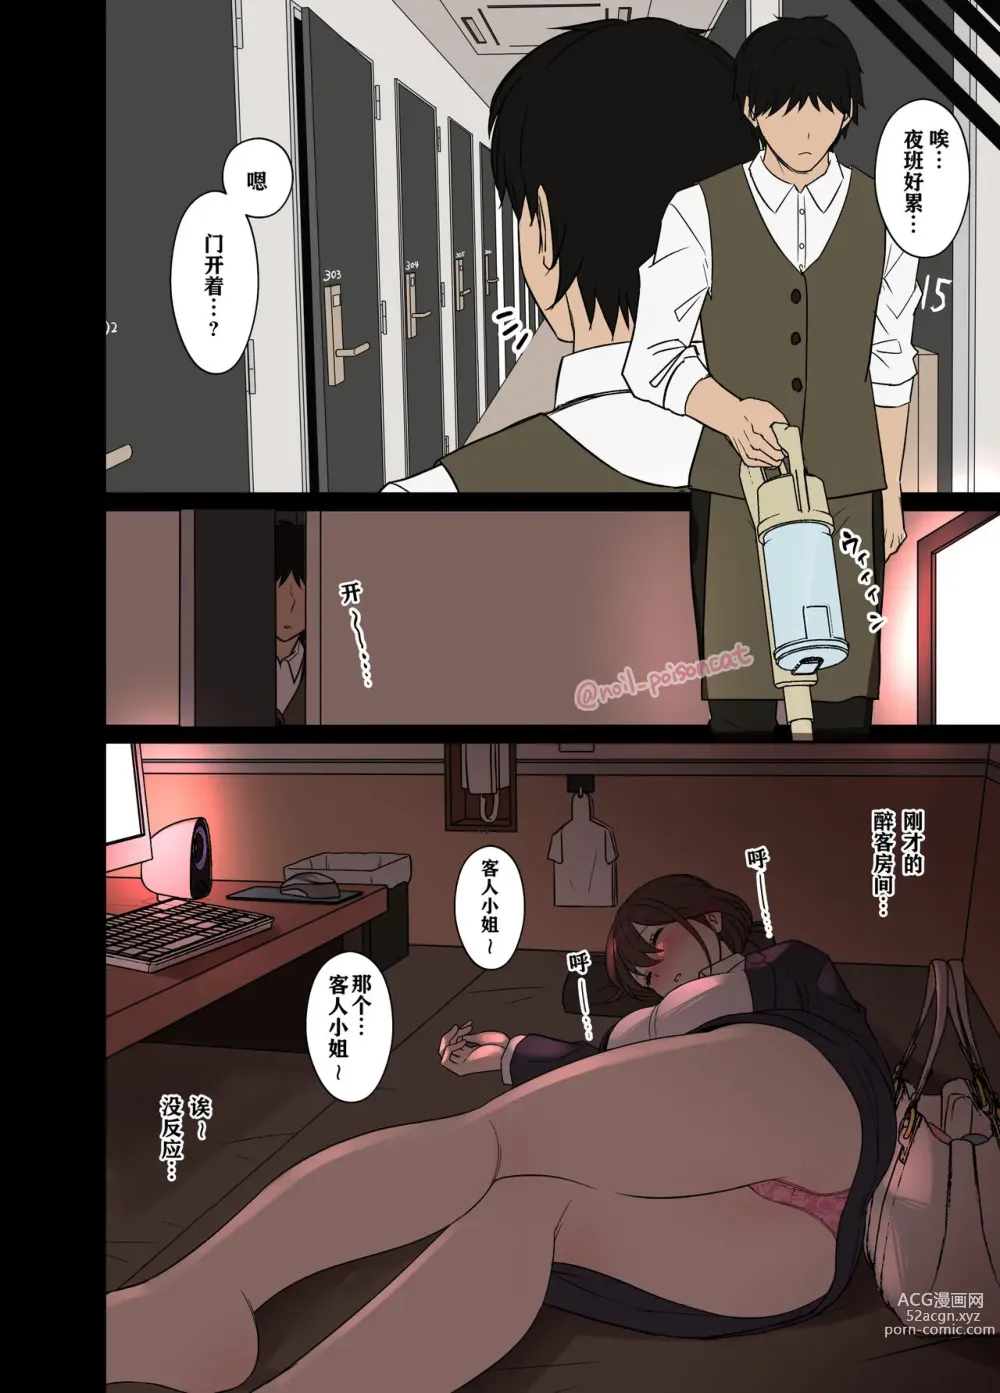 Page 3 of doujinshi 关于对网吧醉酒客人做坏事的故事